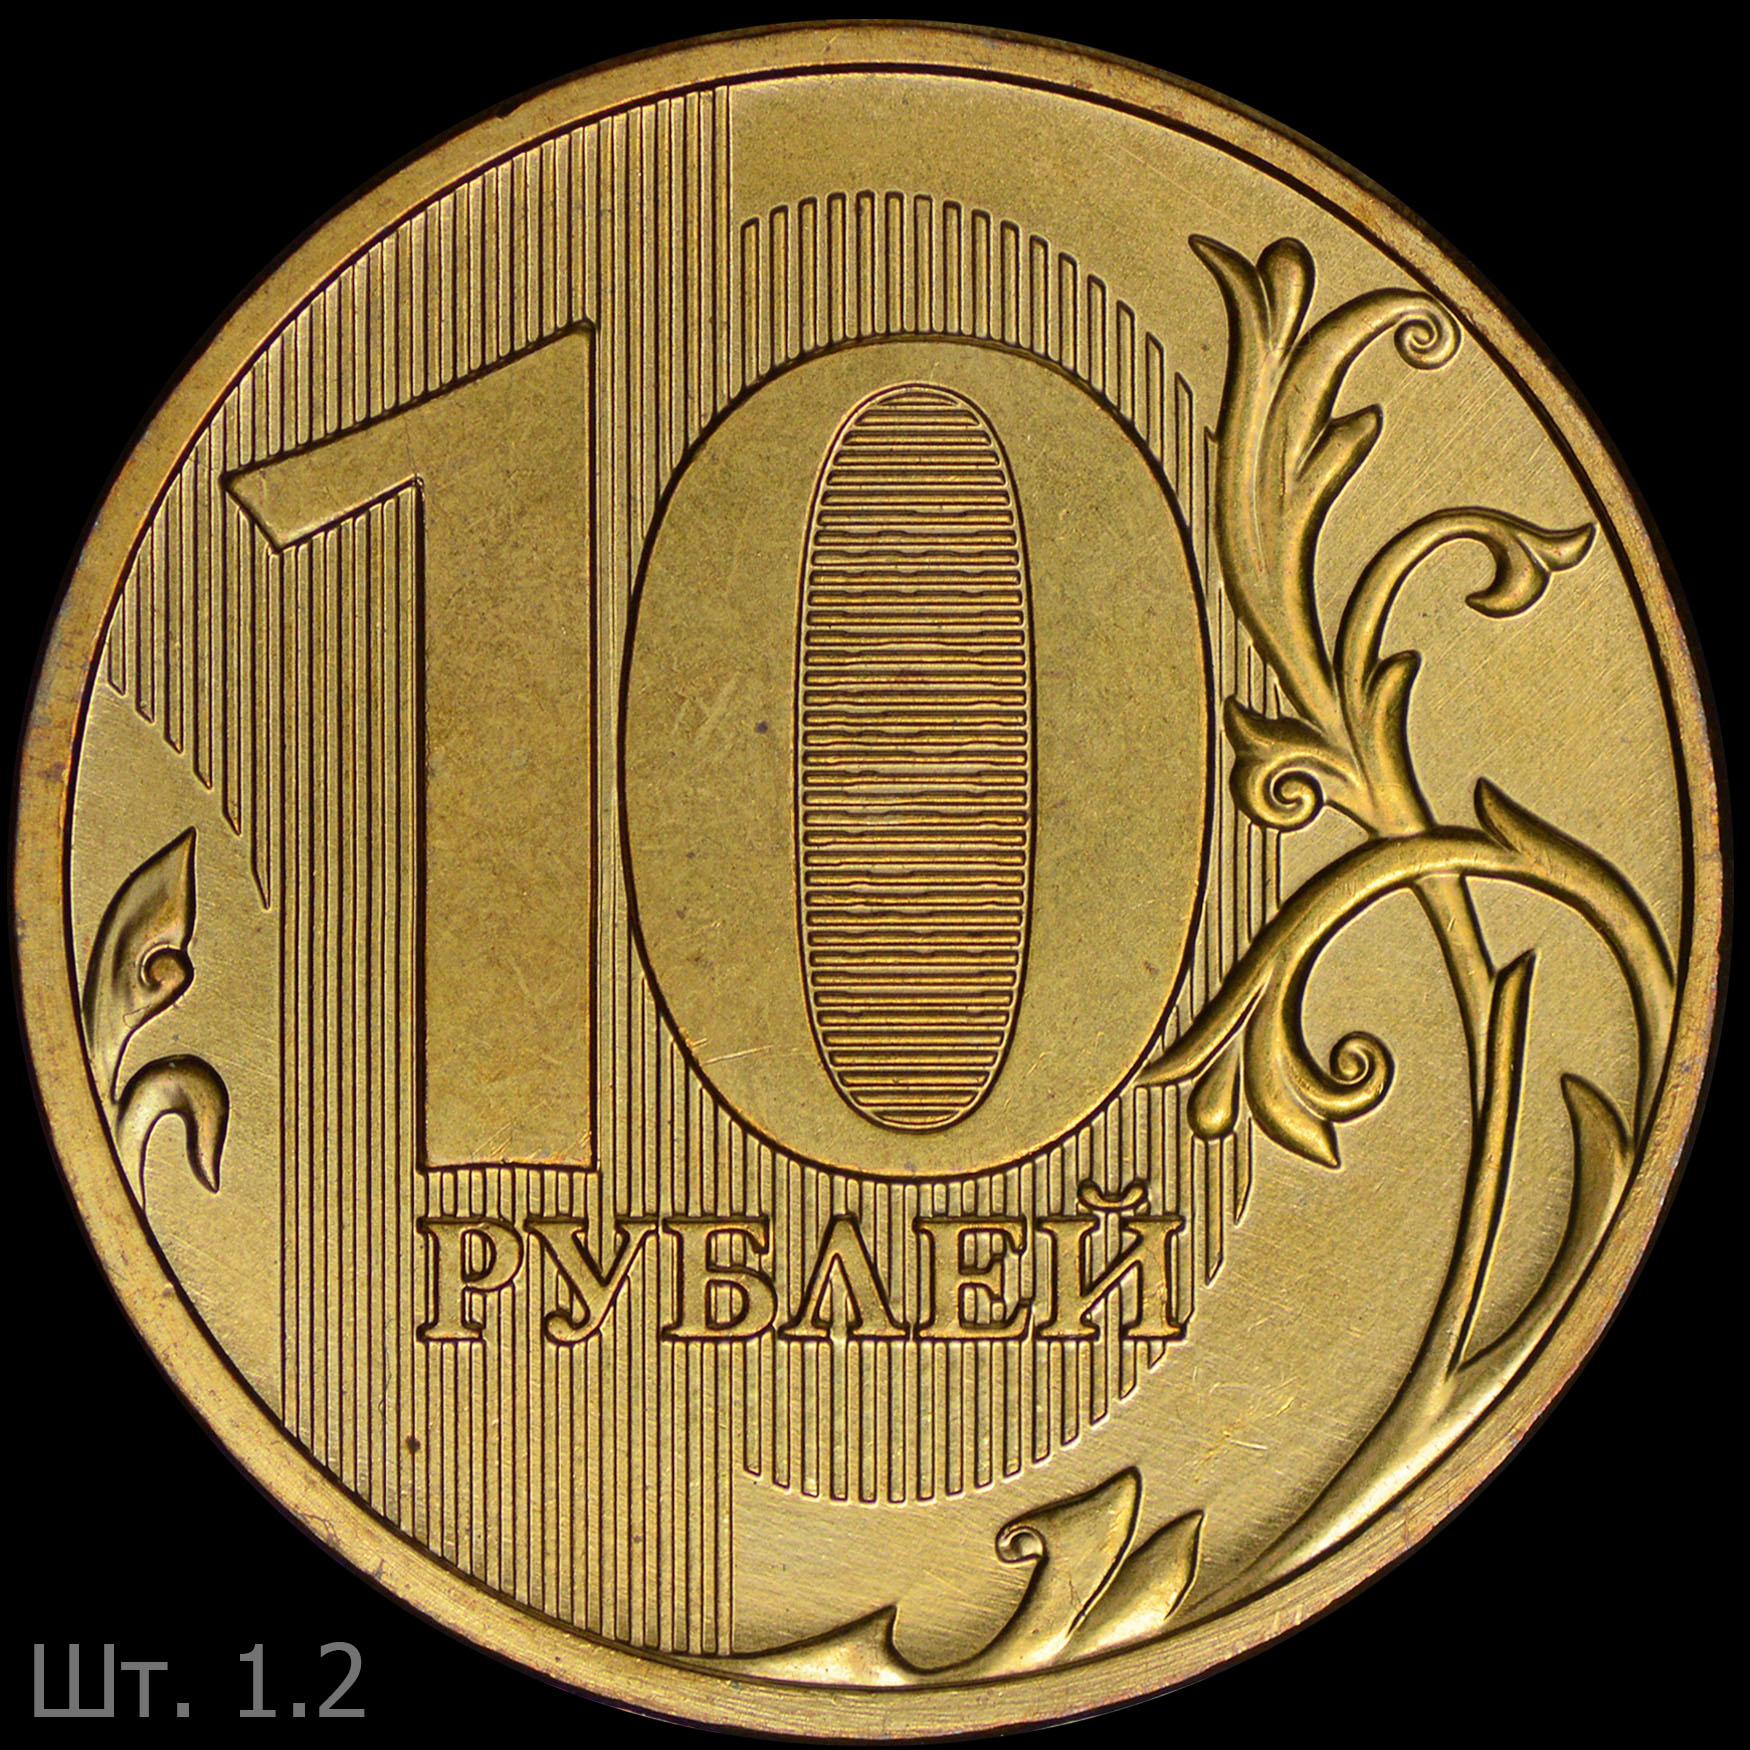 10 от 300 рублей. 10 Рублей 2011 ММД брак непрочекан год. 10 Рублей ММД. 10 Рублей картинка. Триста рублей монета СССР.